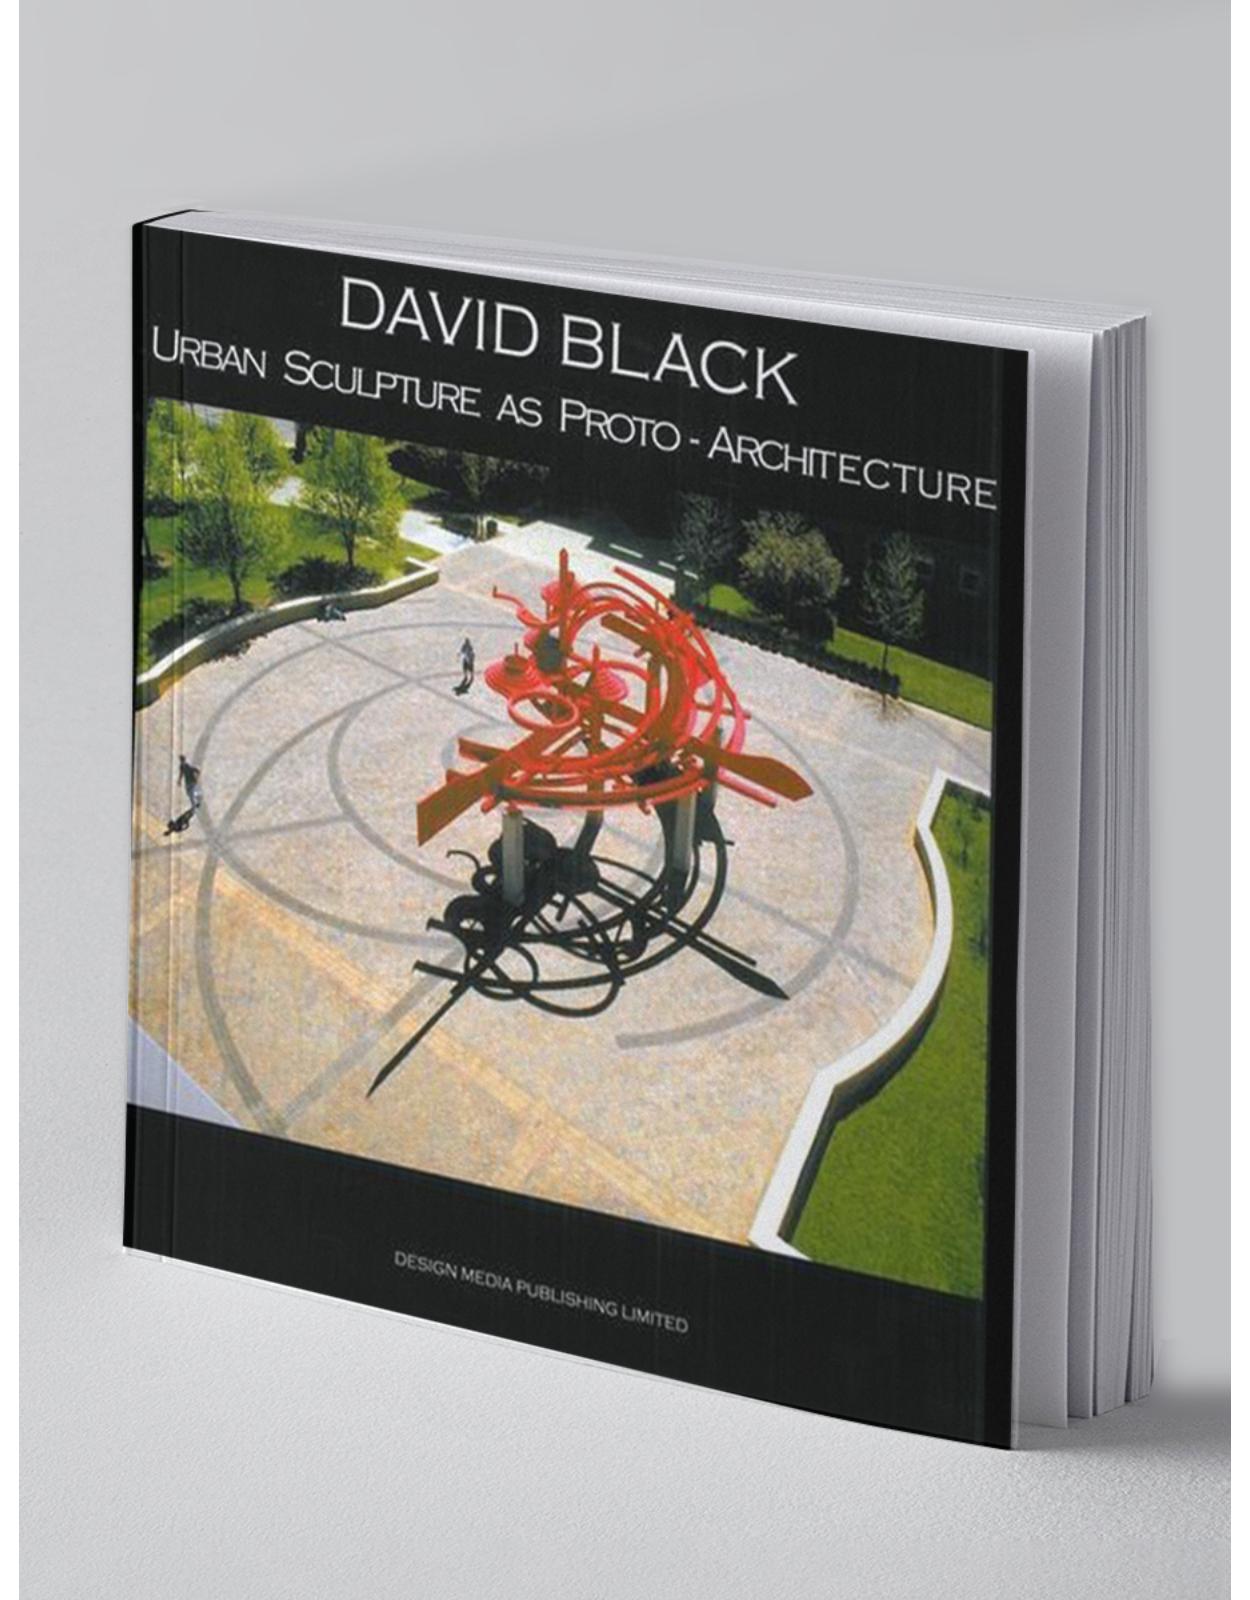 David Black Urban Sculpture As Proto-architecture